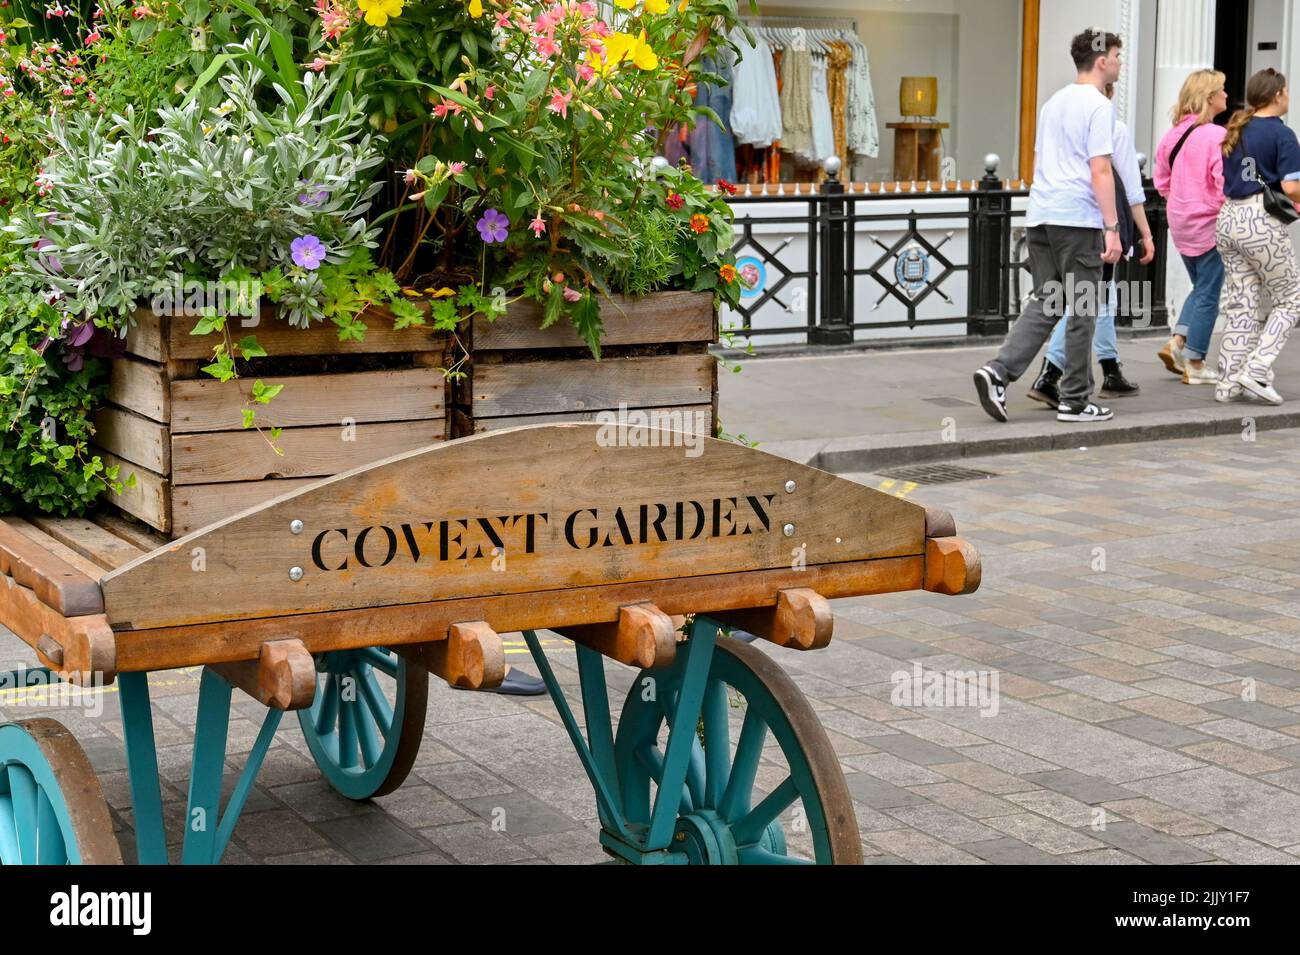 Londres, Reino Unido - Junio 2022: Cartel tallado en un viejo carro de madera con un florero en la parte superior que anuncia la entrada a Covent Garden Foto de stock